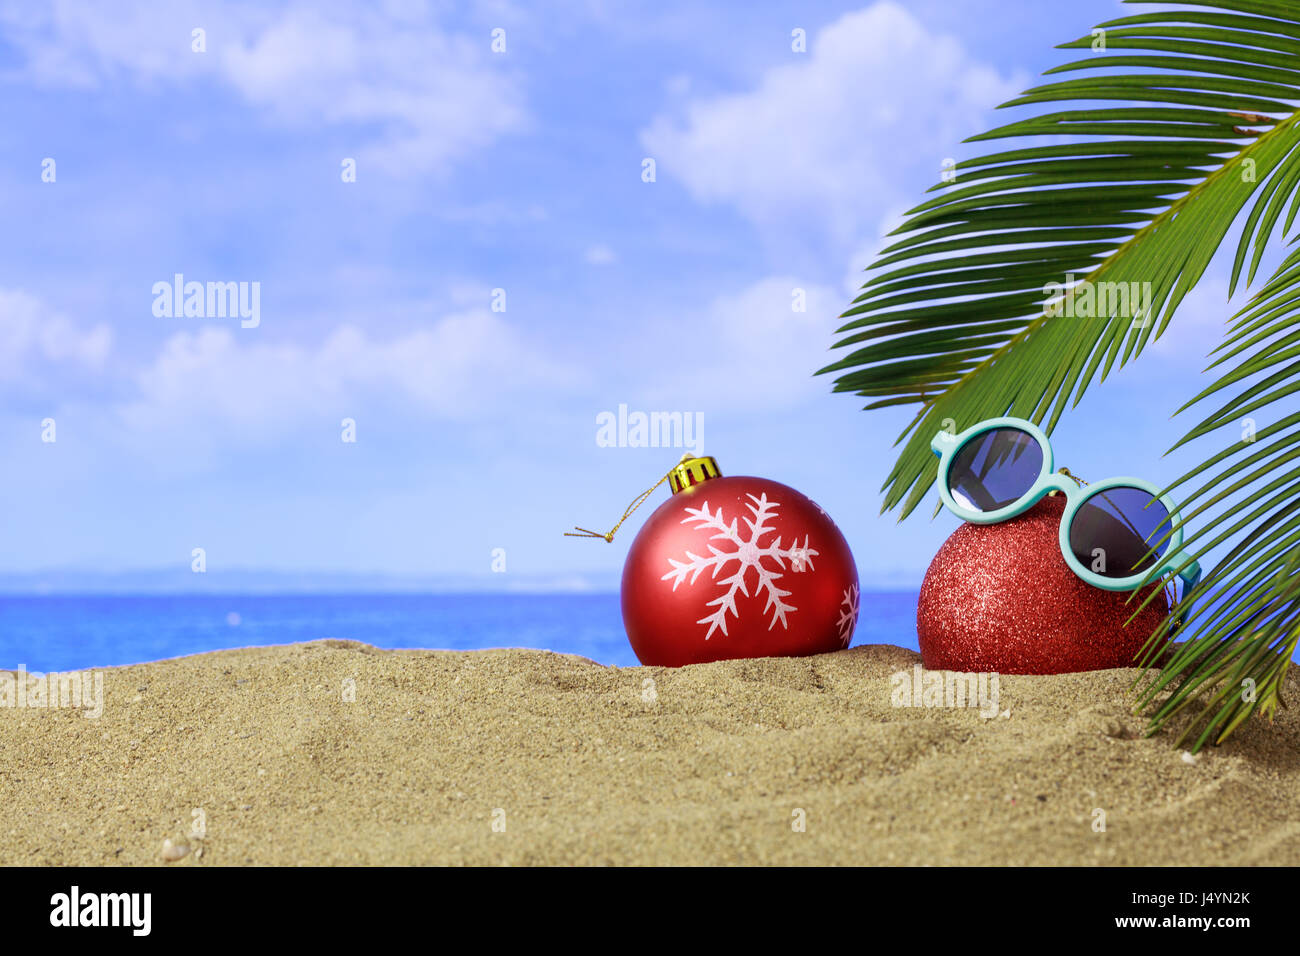 Weihnachtskugeln auf einem Sandstrand - Textfreiraum Stockfoto